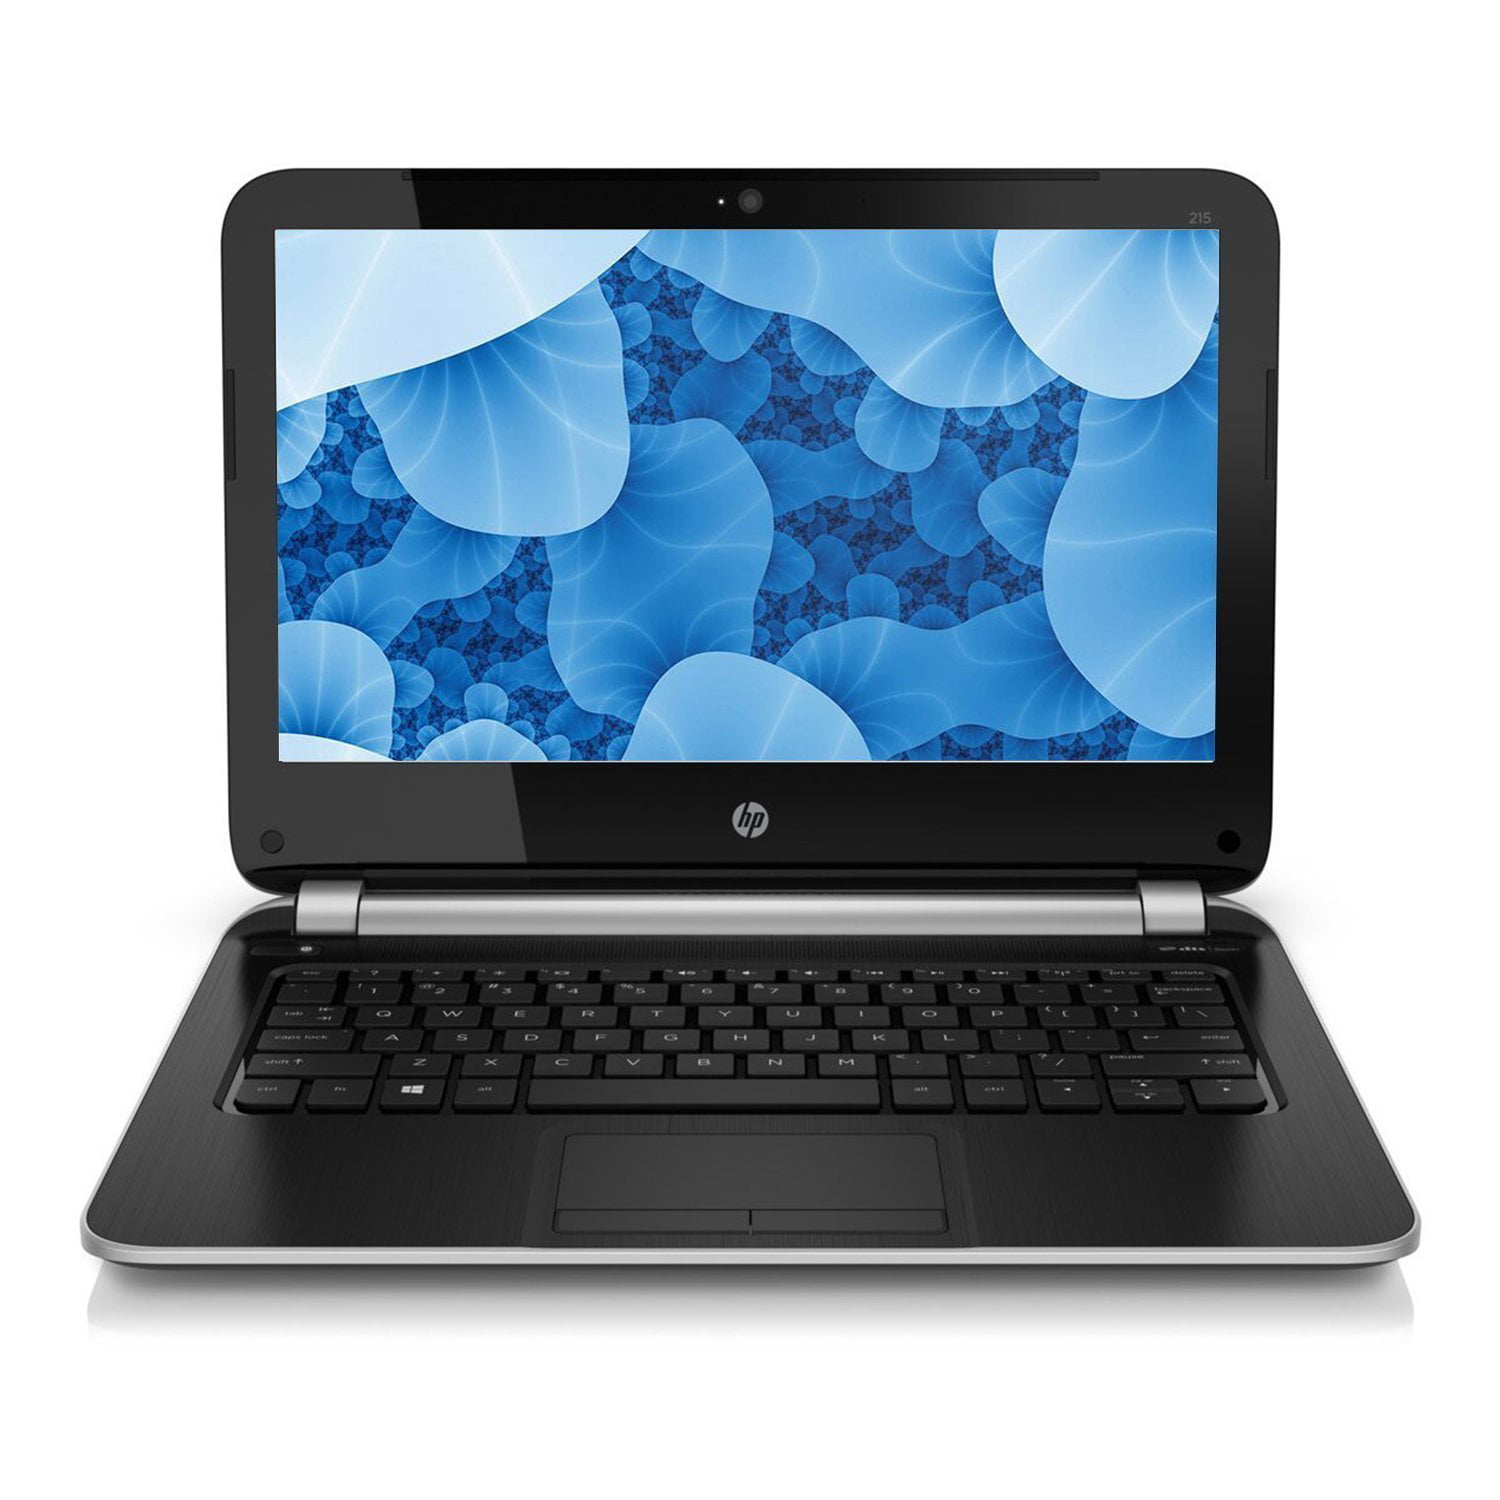 Refurbished HP 11.6" Laptop 215 G1 AMD A6 1450 1.0GHz 4GB Ram 320GB HDD